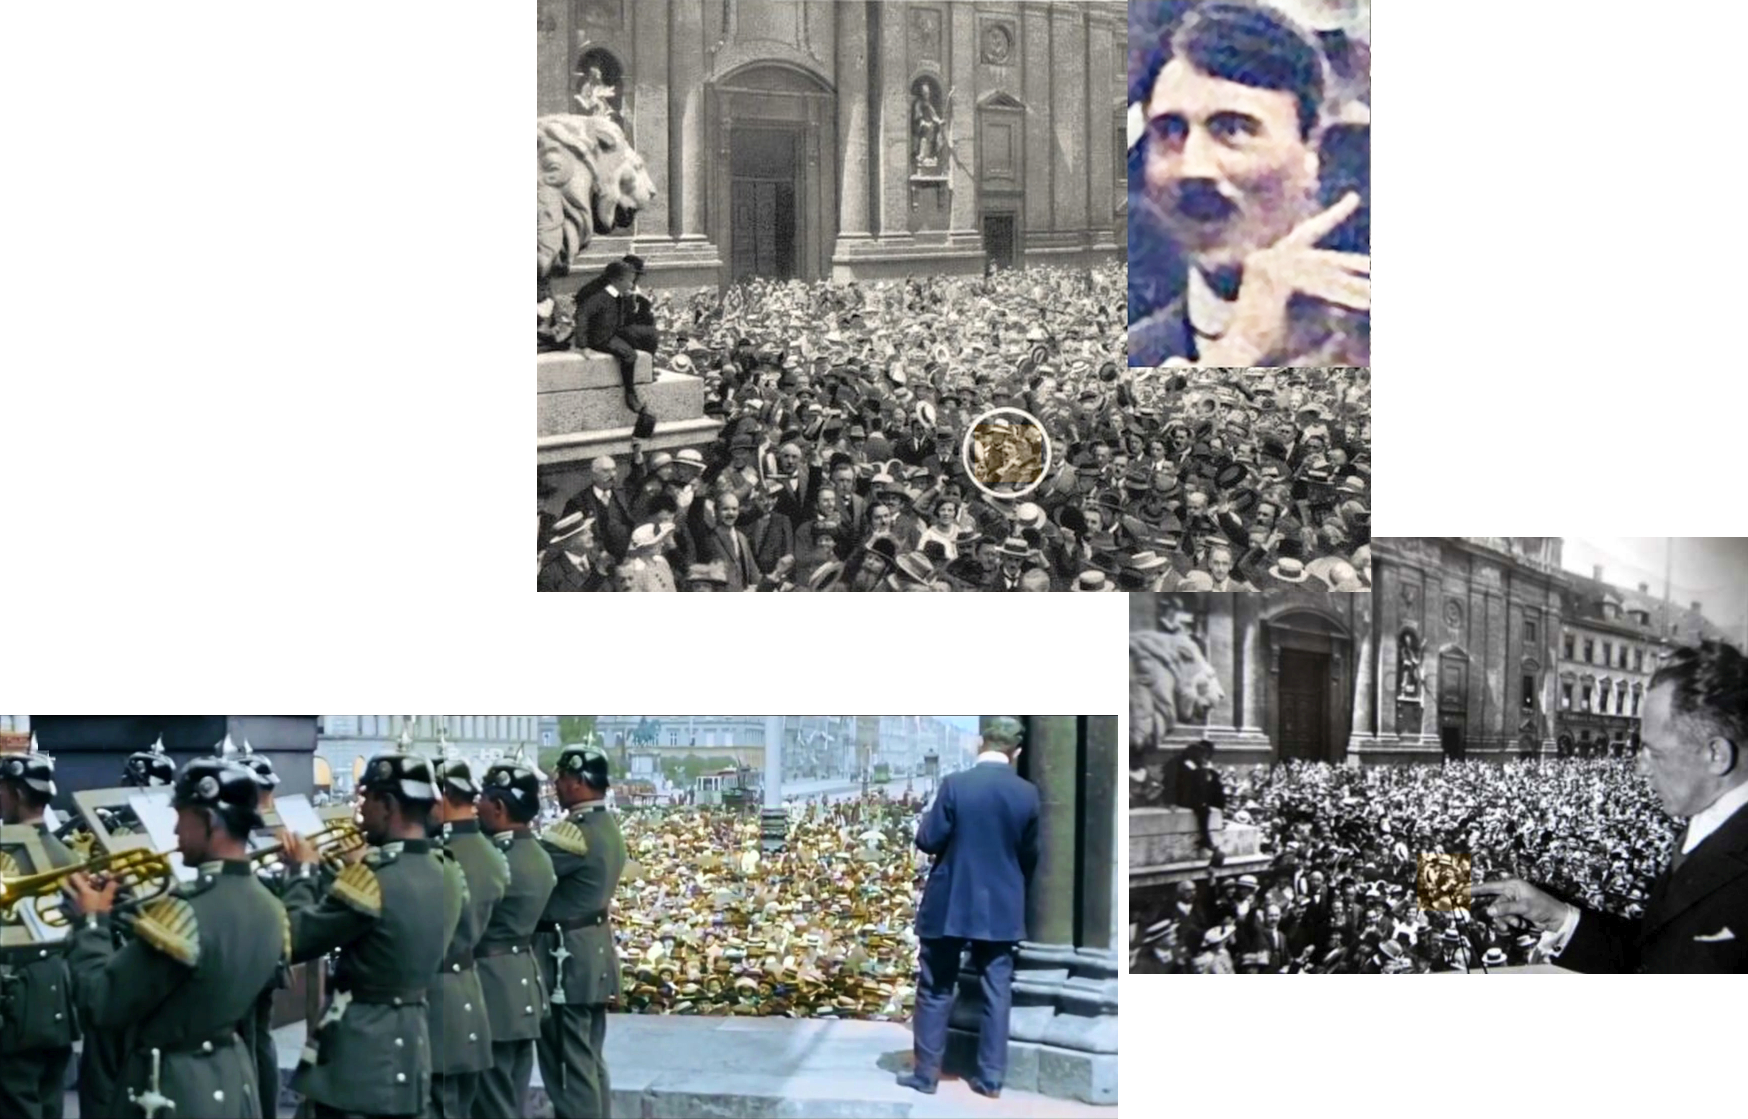  Jubelnder Hitler am 2.8.1914 vergrößert aus Foto von Heinrich Hoffmann